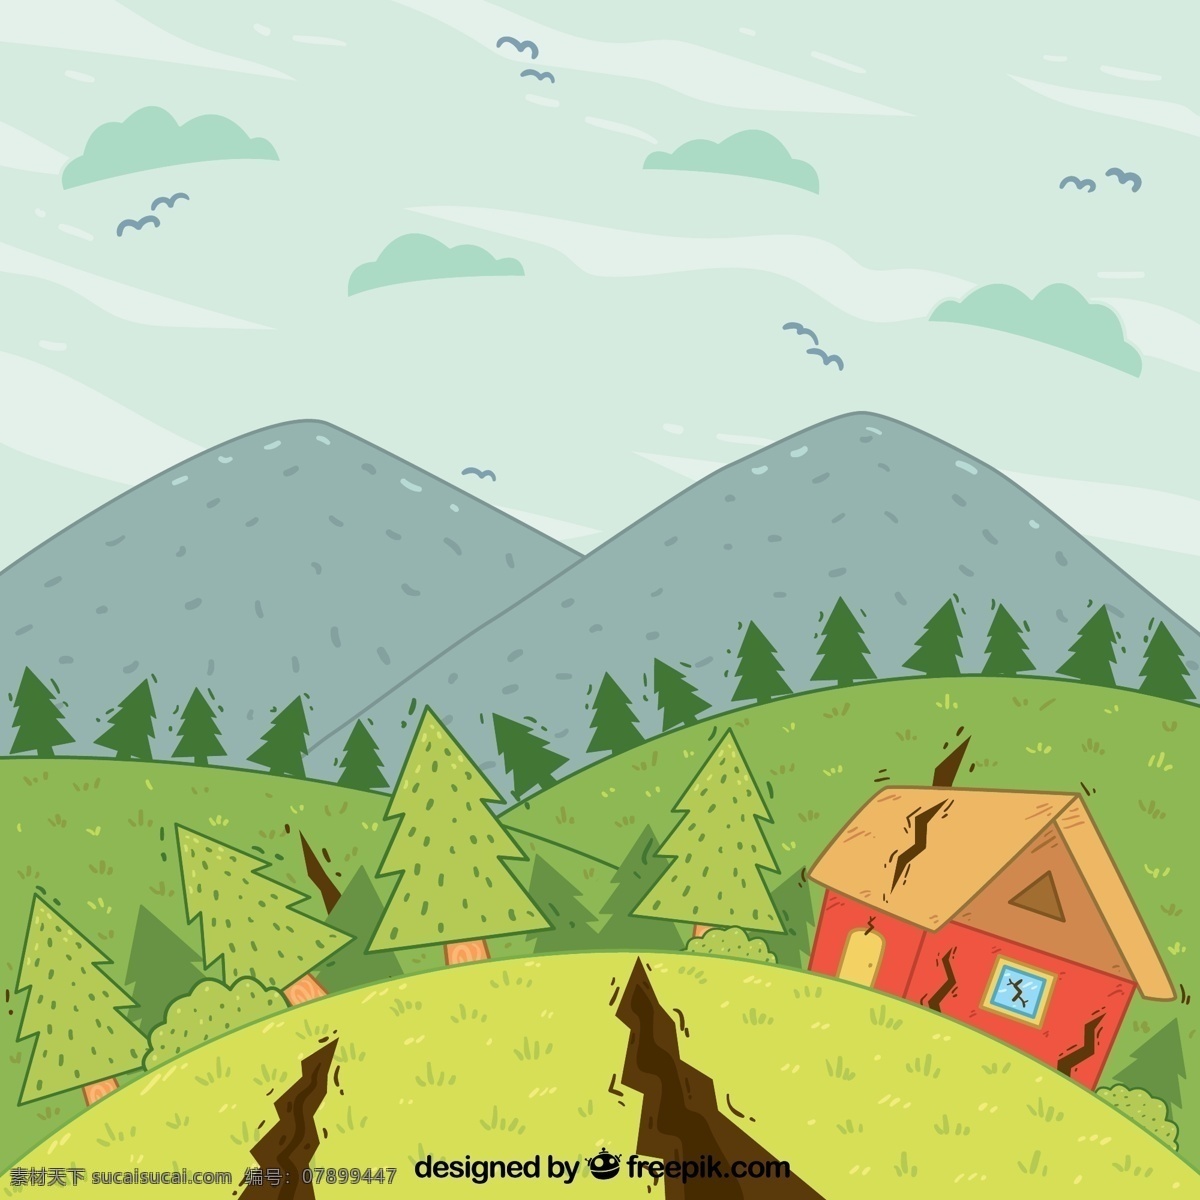 创意 地震 灾害 插画 矢量 山 裂缝 房屋 树木 森林 自然灾害 动漫动画 风景漫画